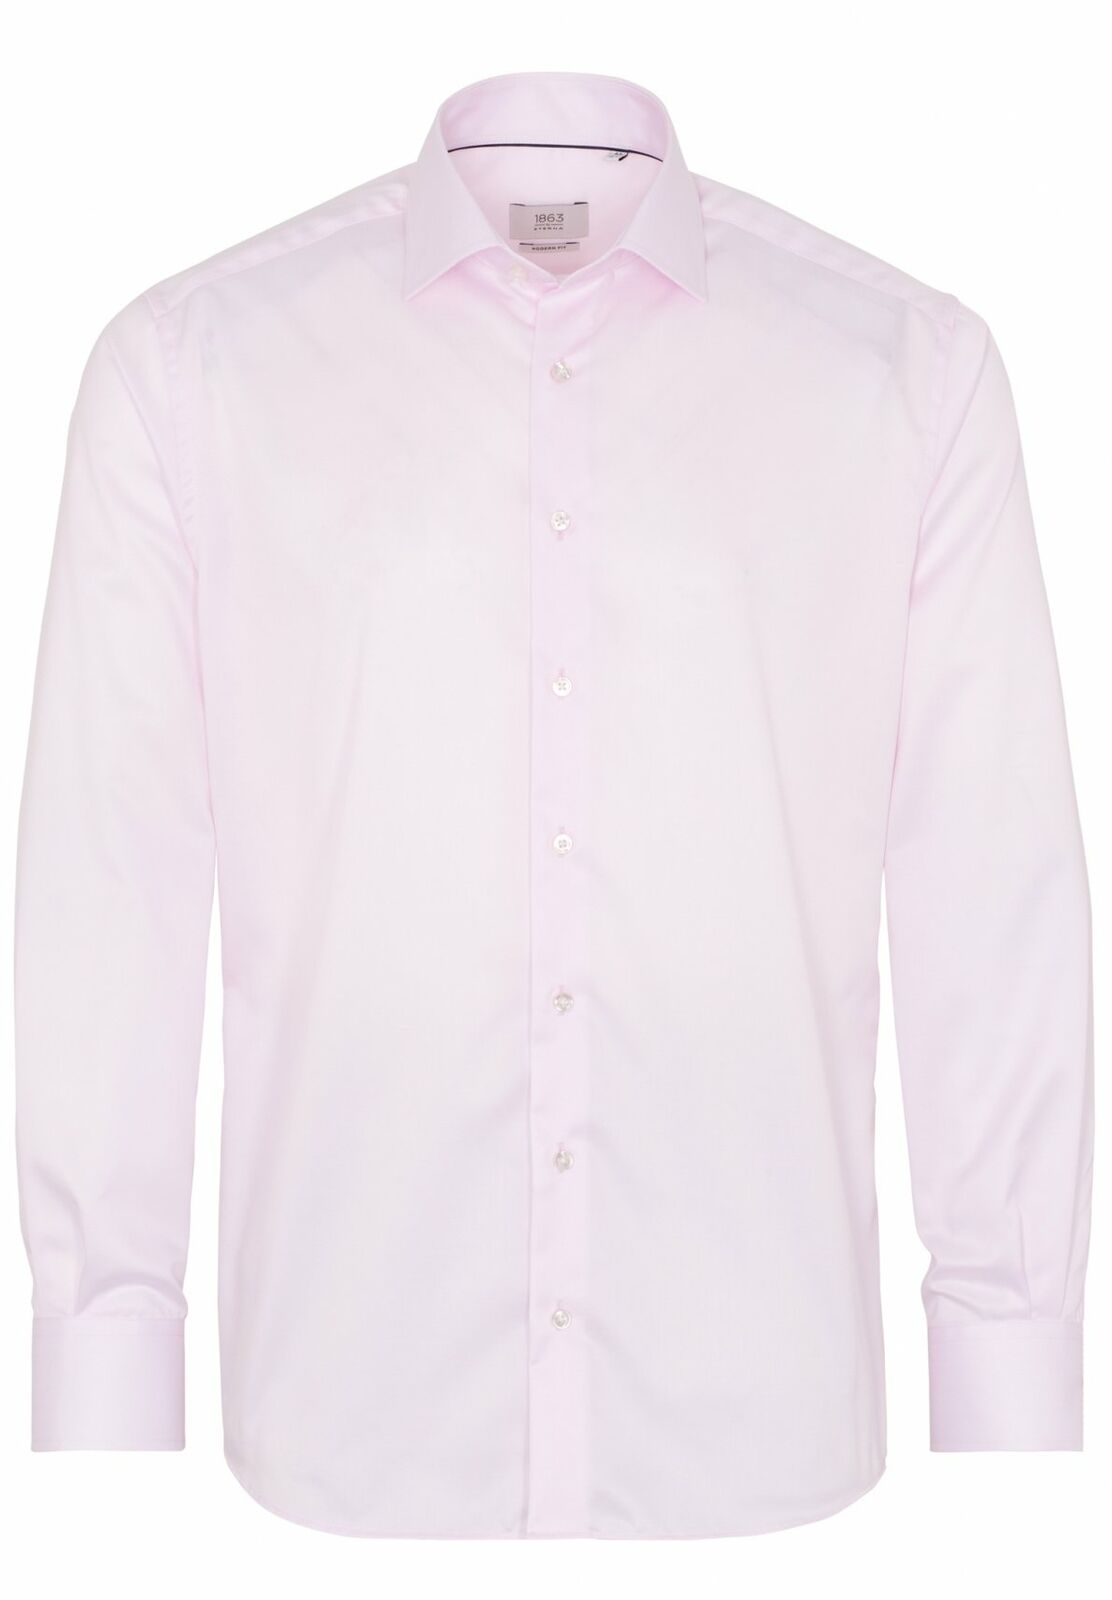 1863 By Eterna Long Sleeve Shirt Pink Opaque 8005-50-x687 Modern Fit Shirt Men